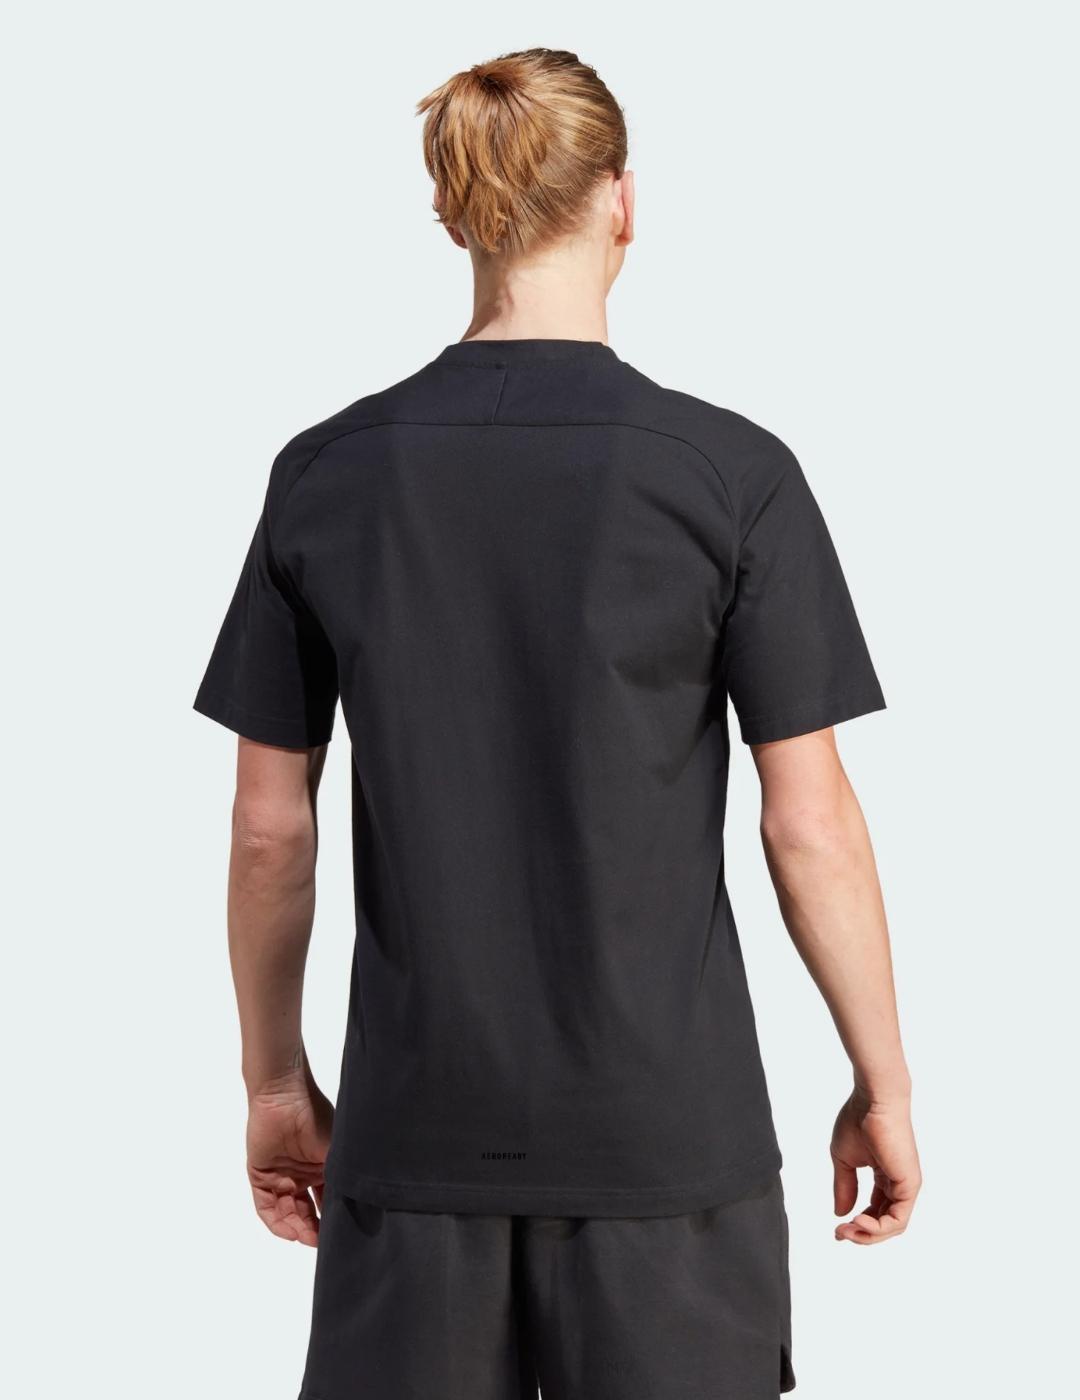 Camiseta Adidas negra para hombre